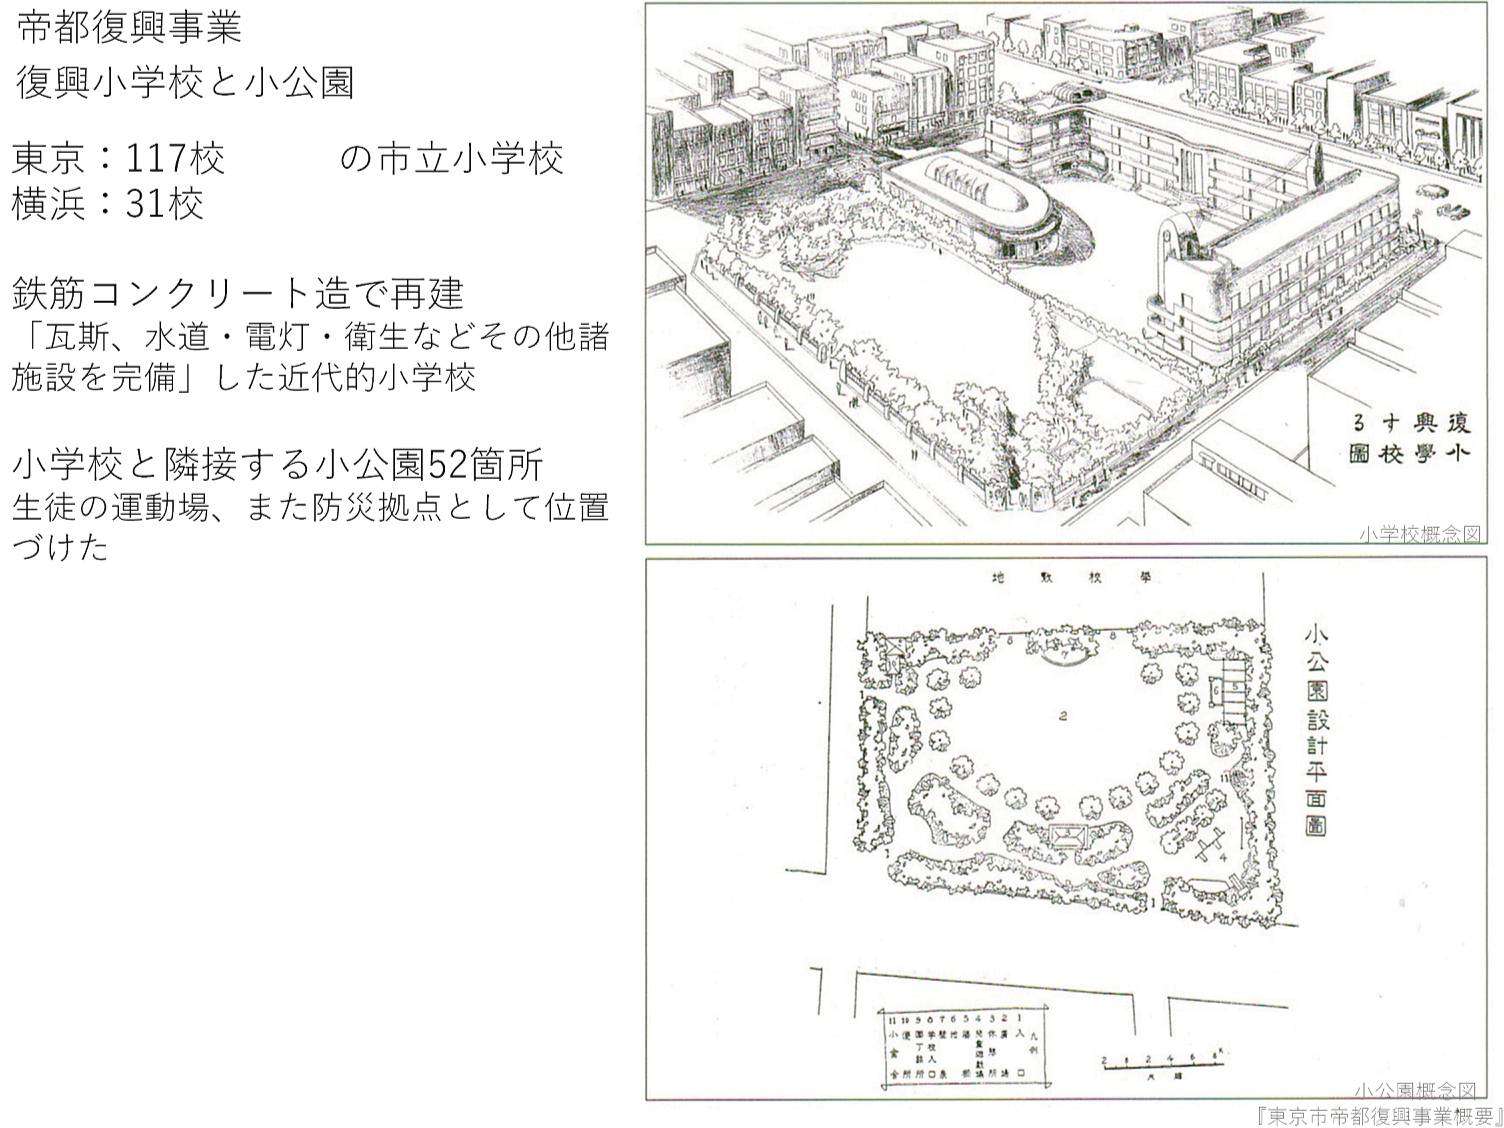 復興小学校と小公園（出典：『東京市帝都復興事業概要』）